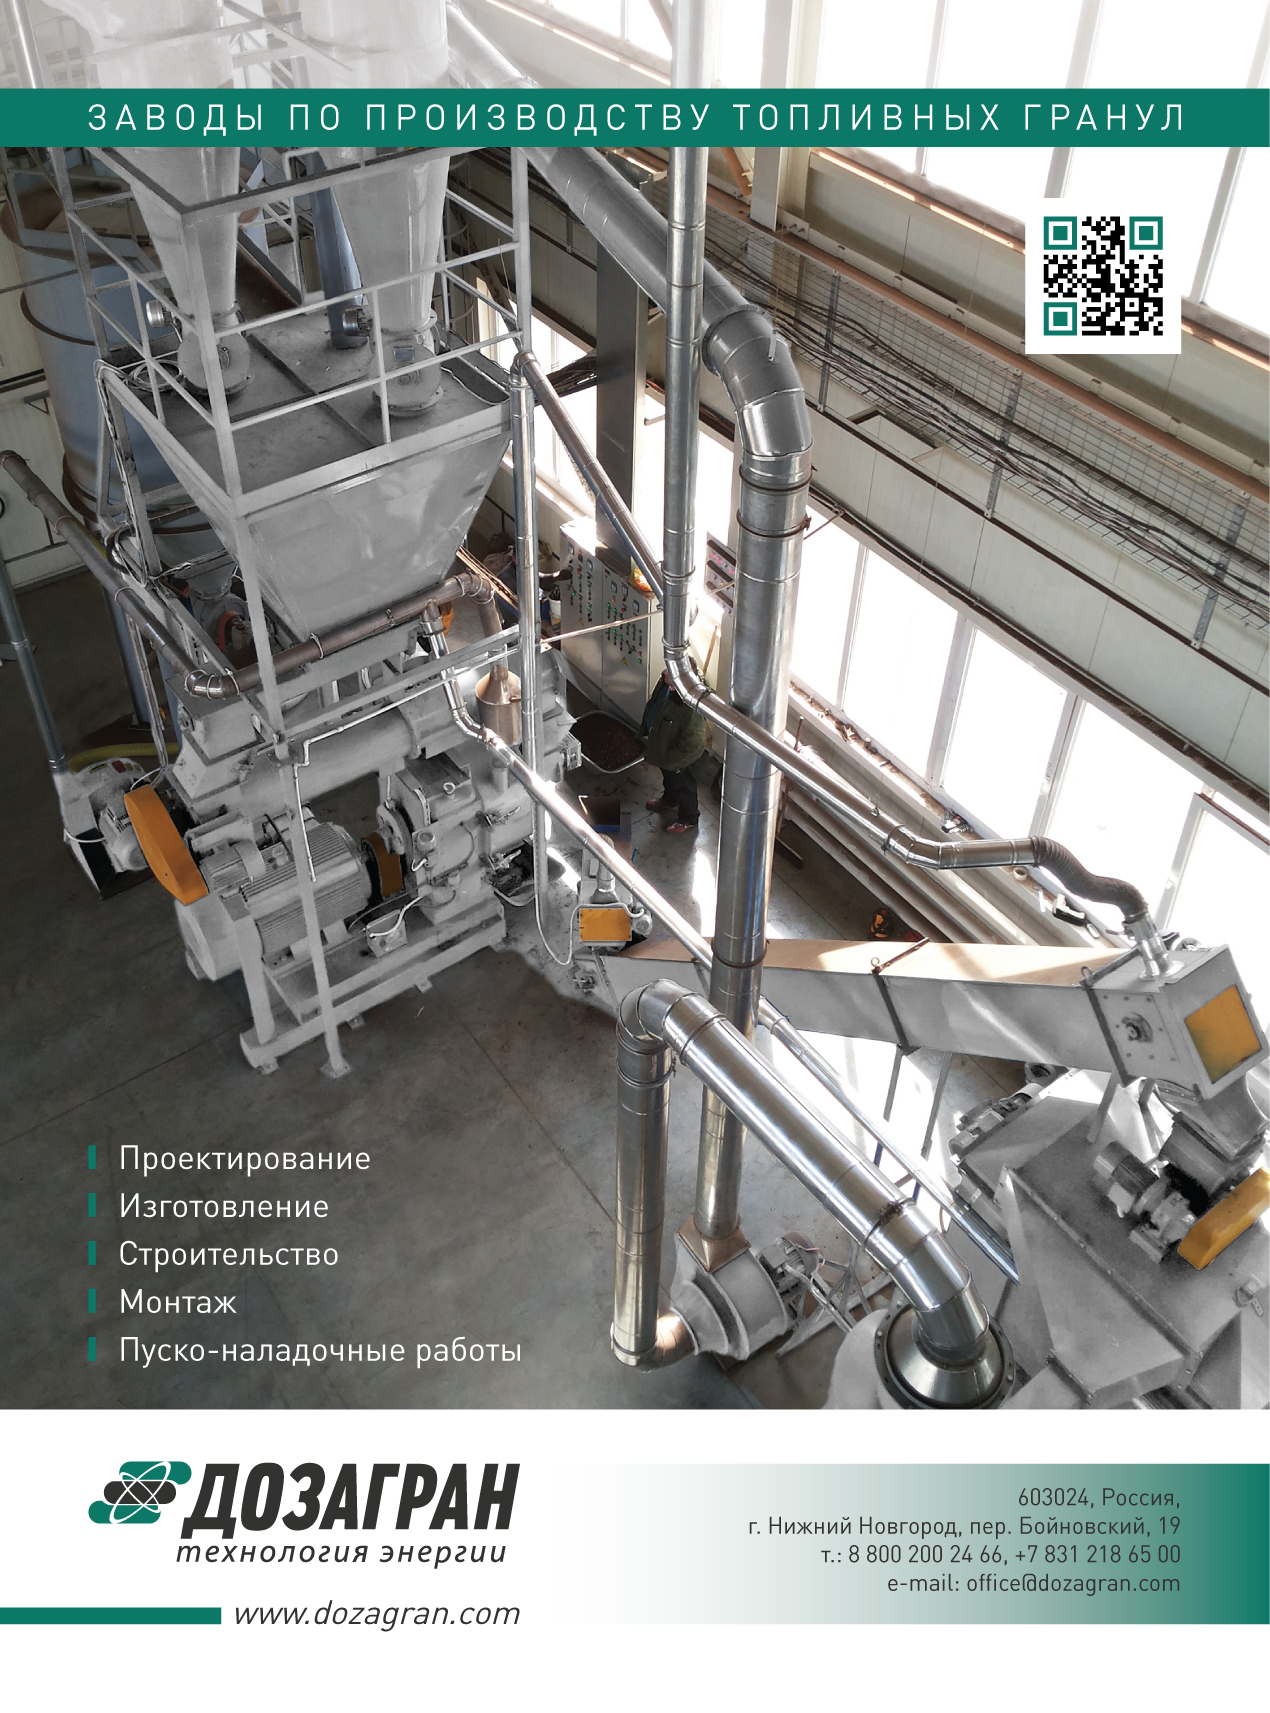 Технология производства топливных гранул "Доза-Гран" в журнале «Лесной комплекс» 